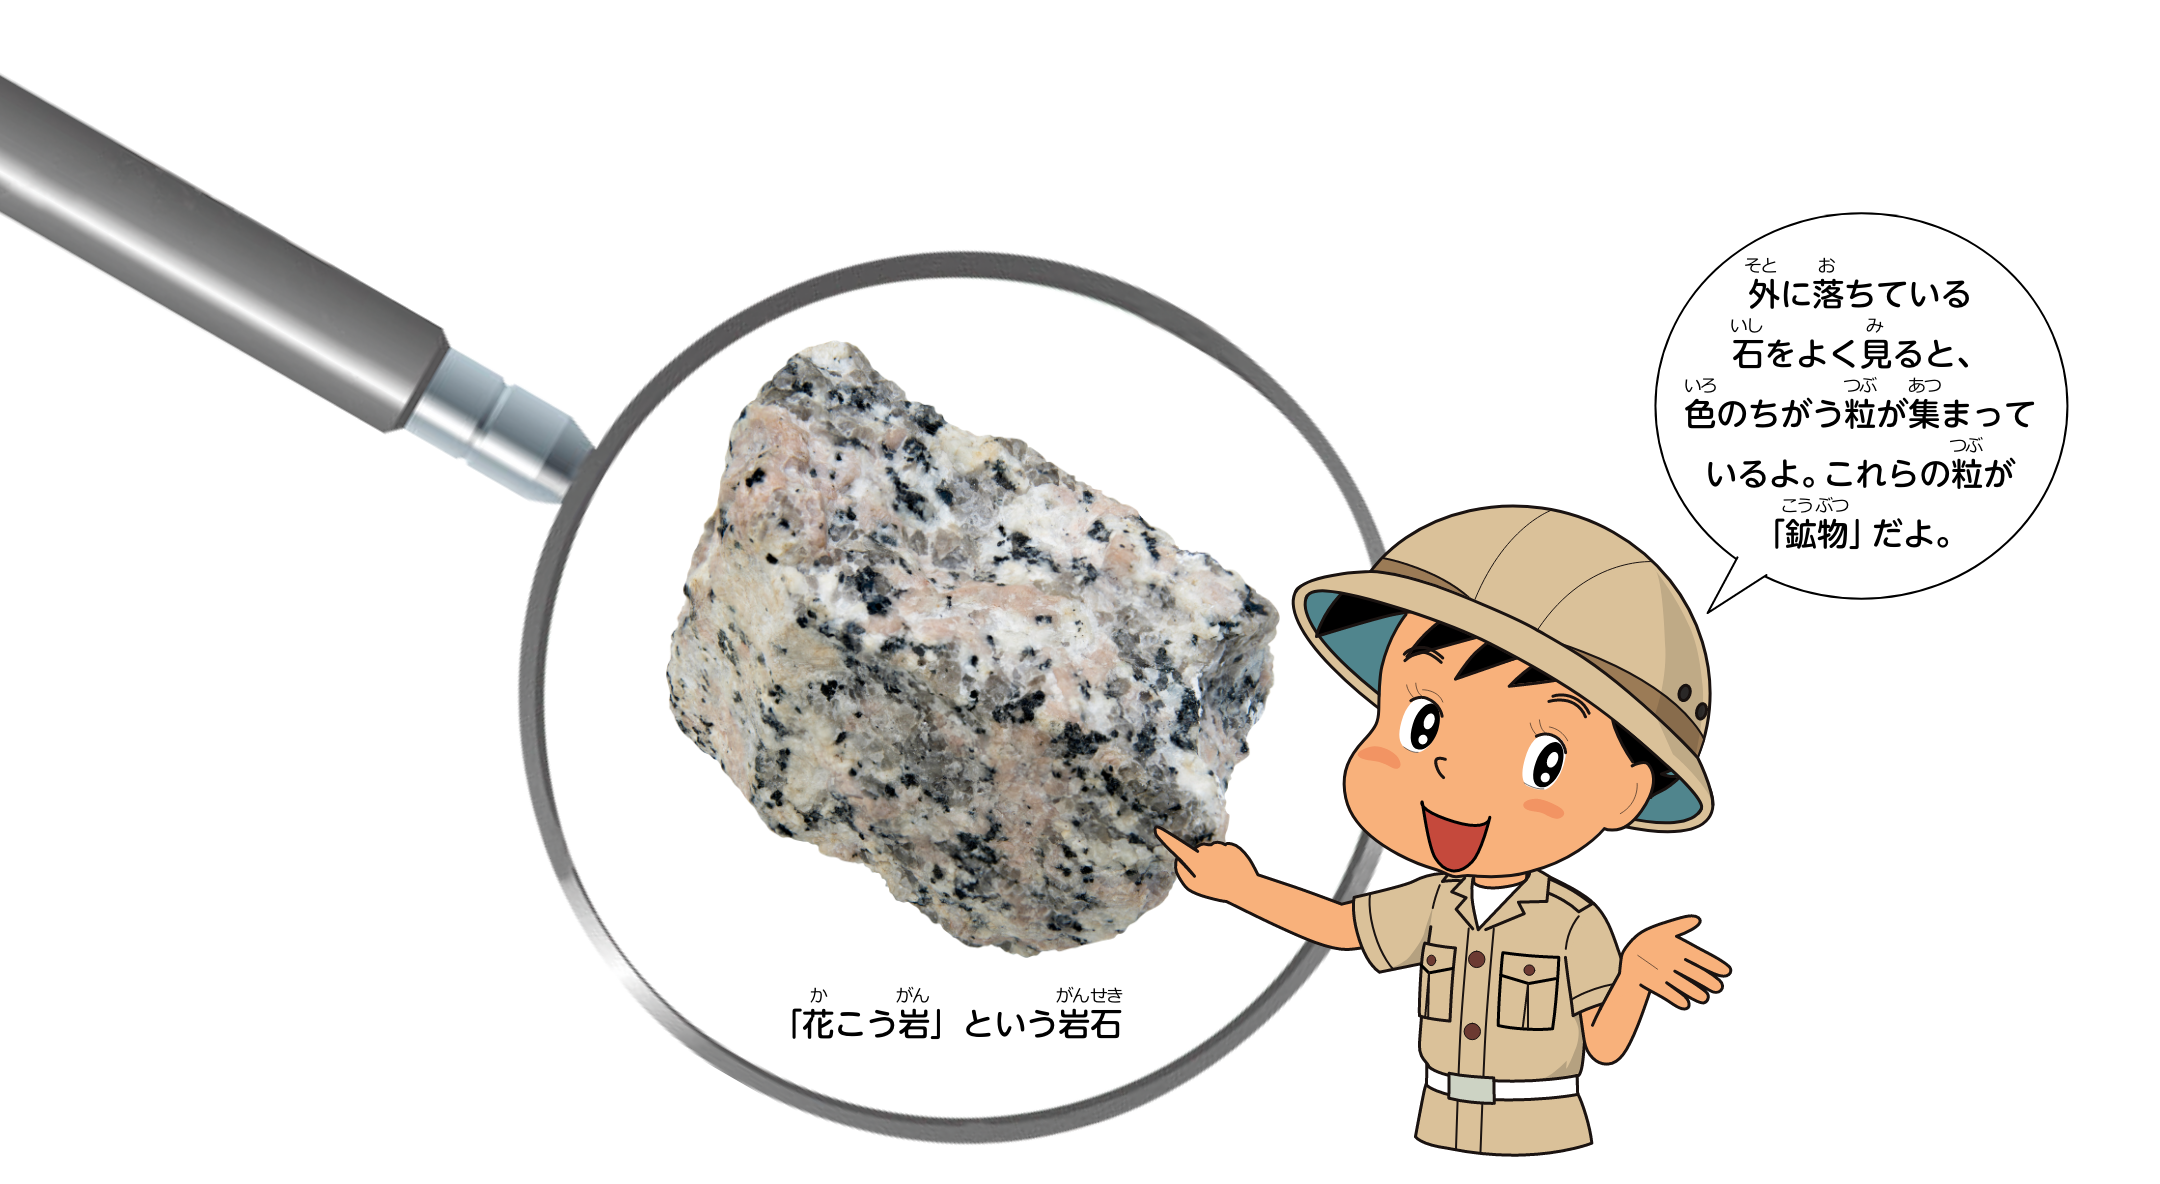 外に落ちている石をよく見ると、色のちがう粒が集まっているよ。これらの粒が「鉱物」だよ。